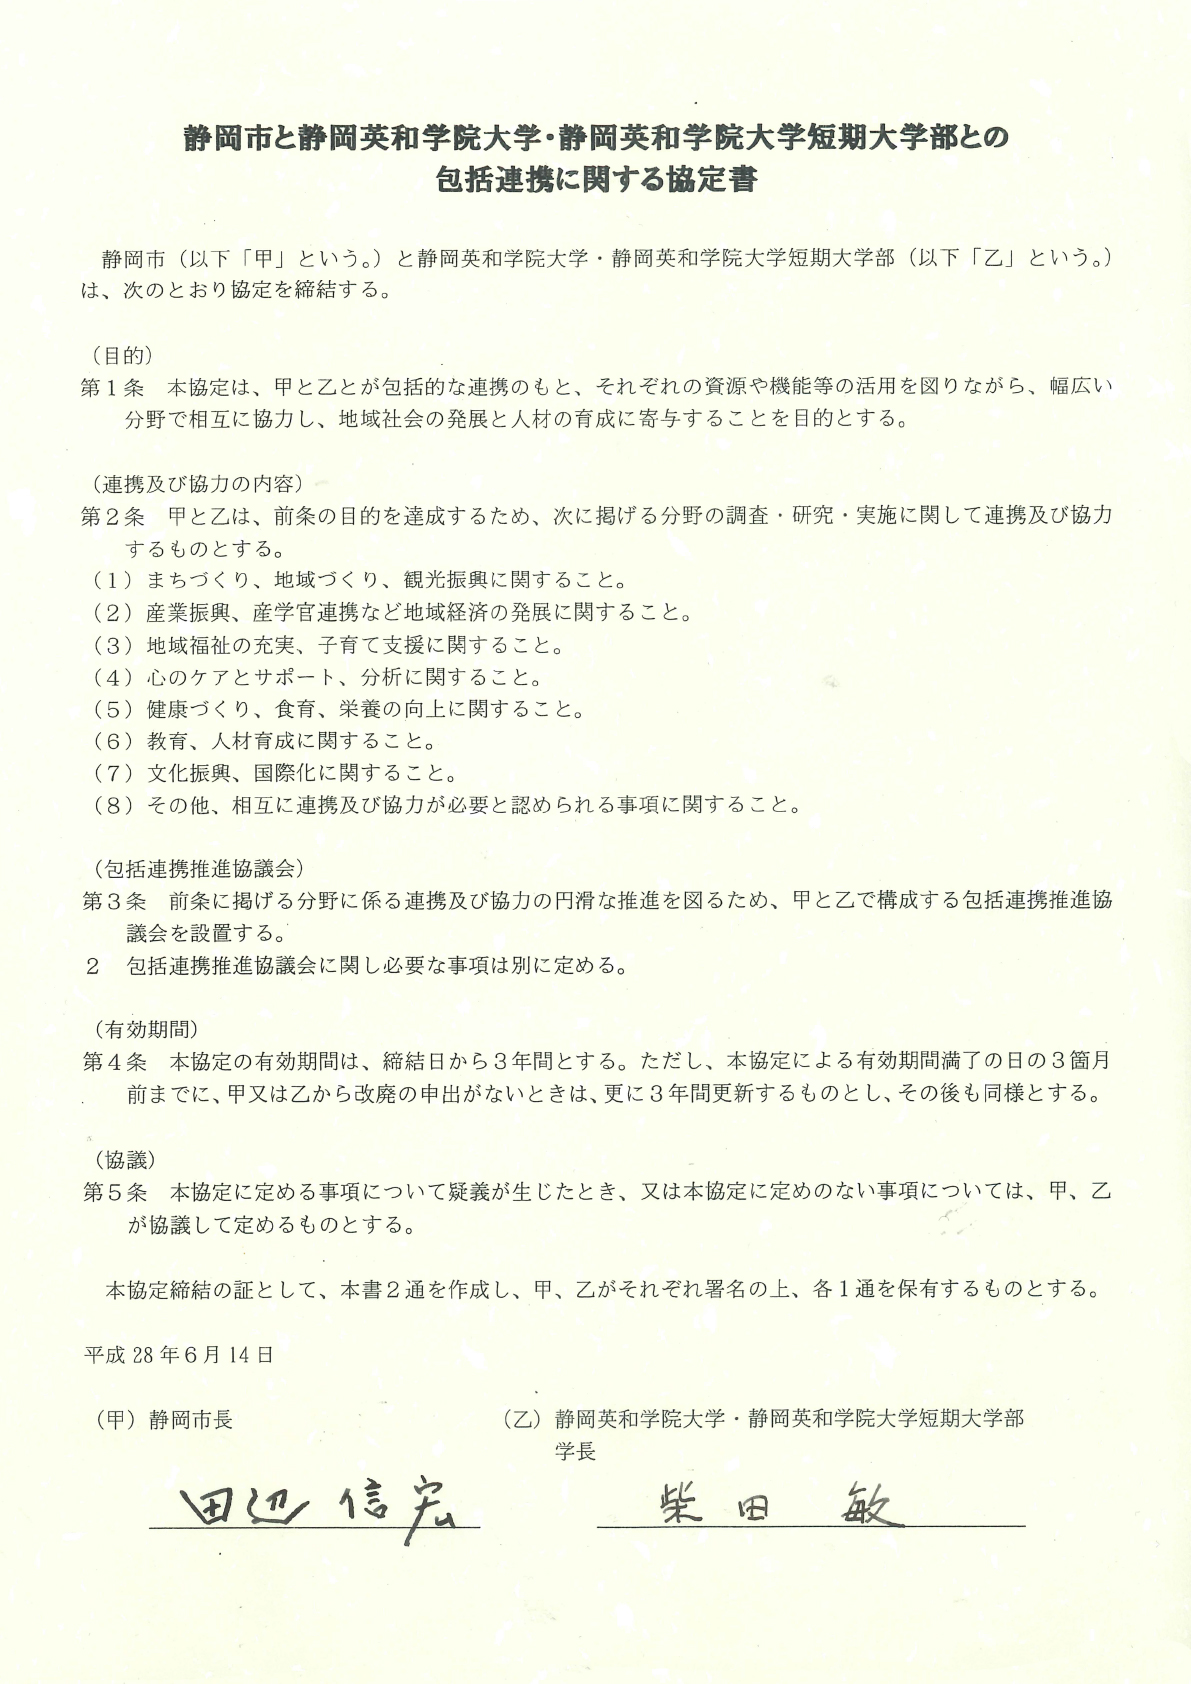 静岡市との包括連携に関する協定書